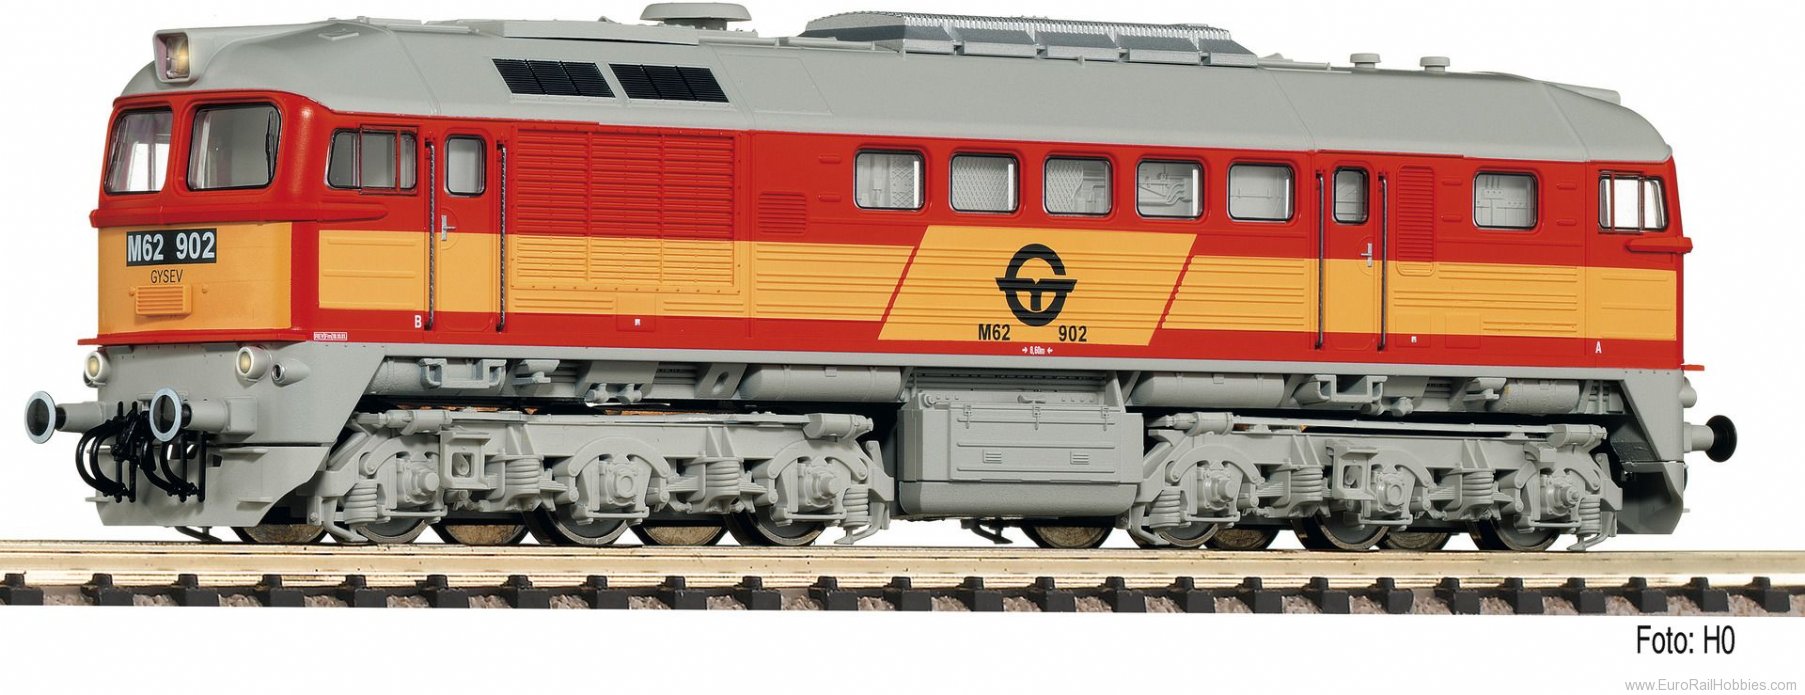 Fleischmann 725211 Gysev Diesel locomotive M62 902 